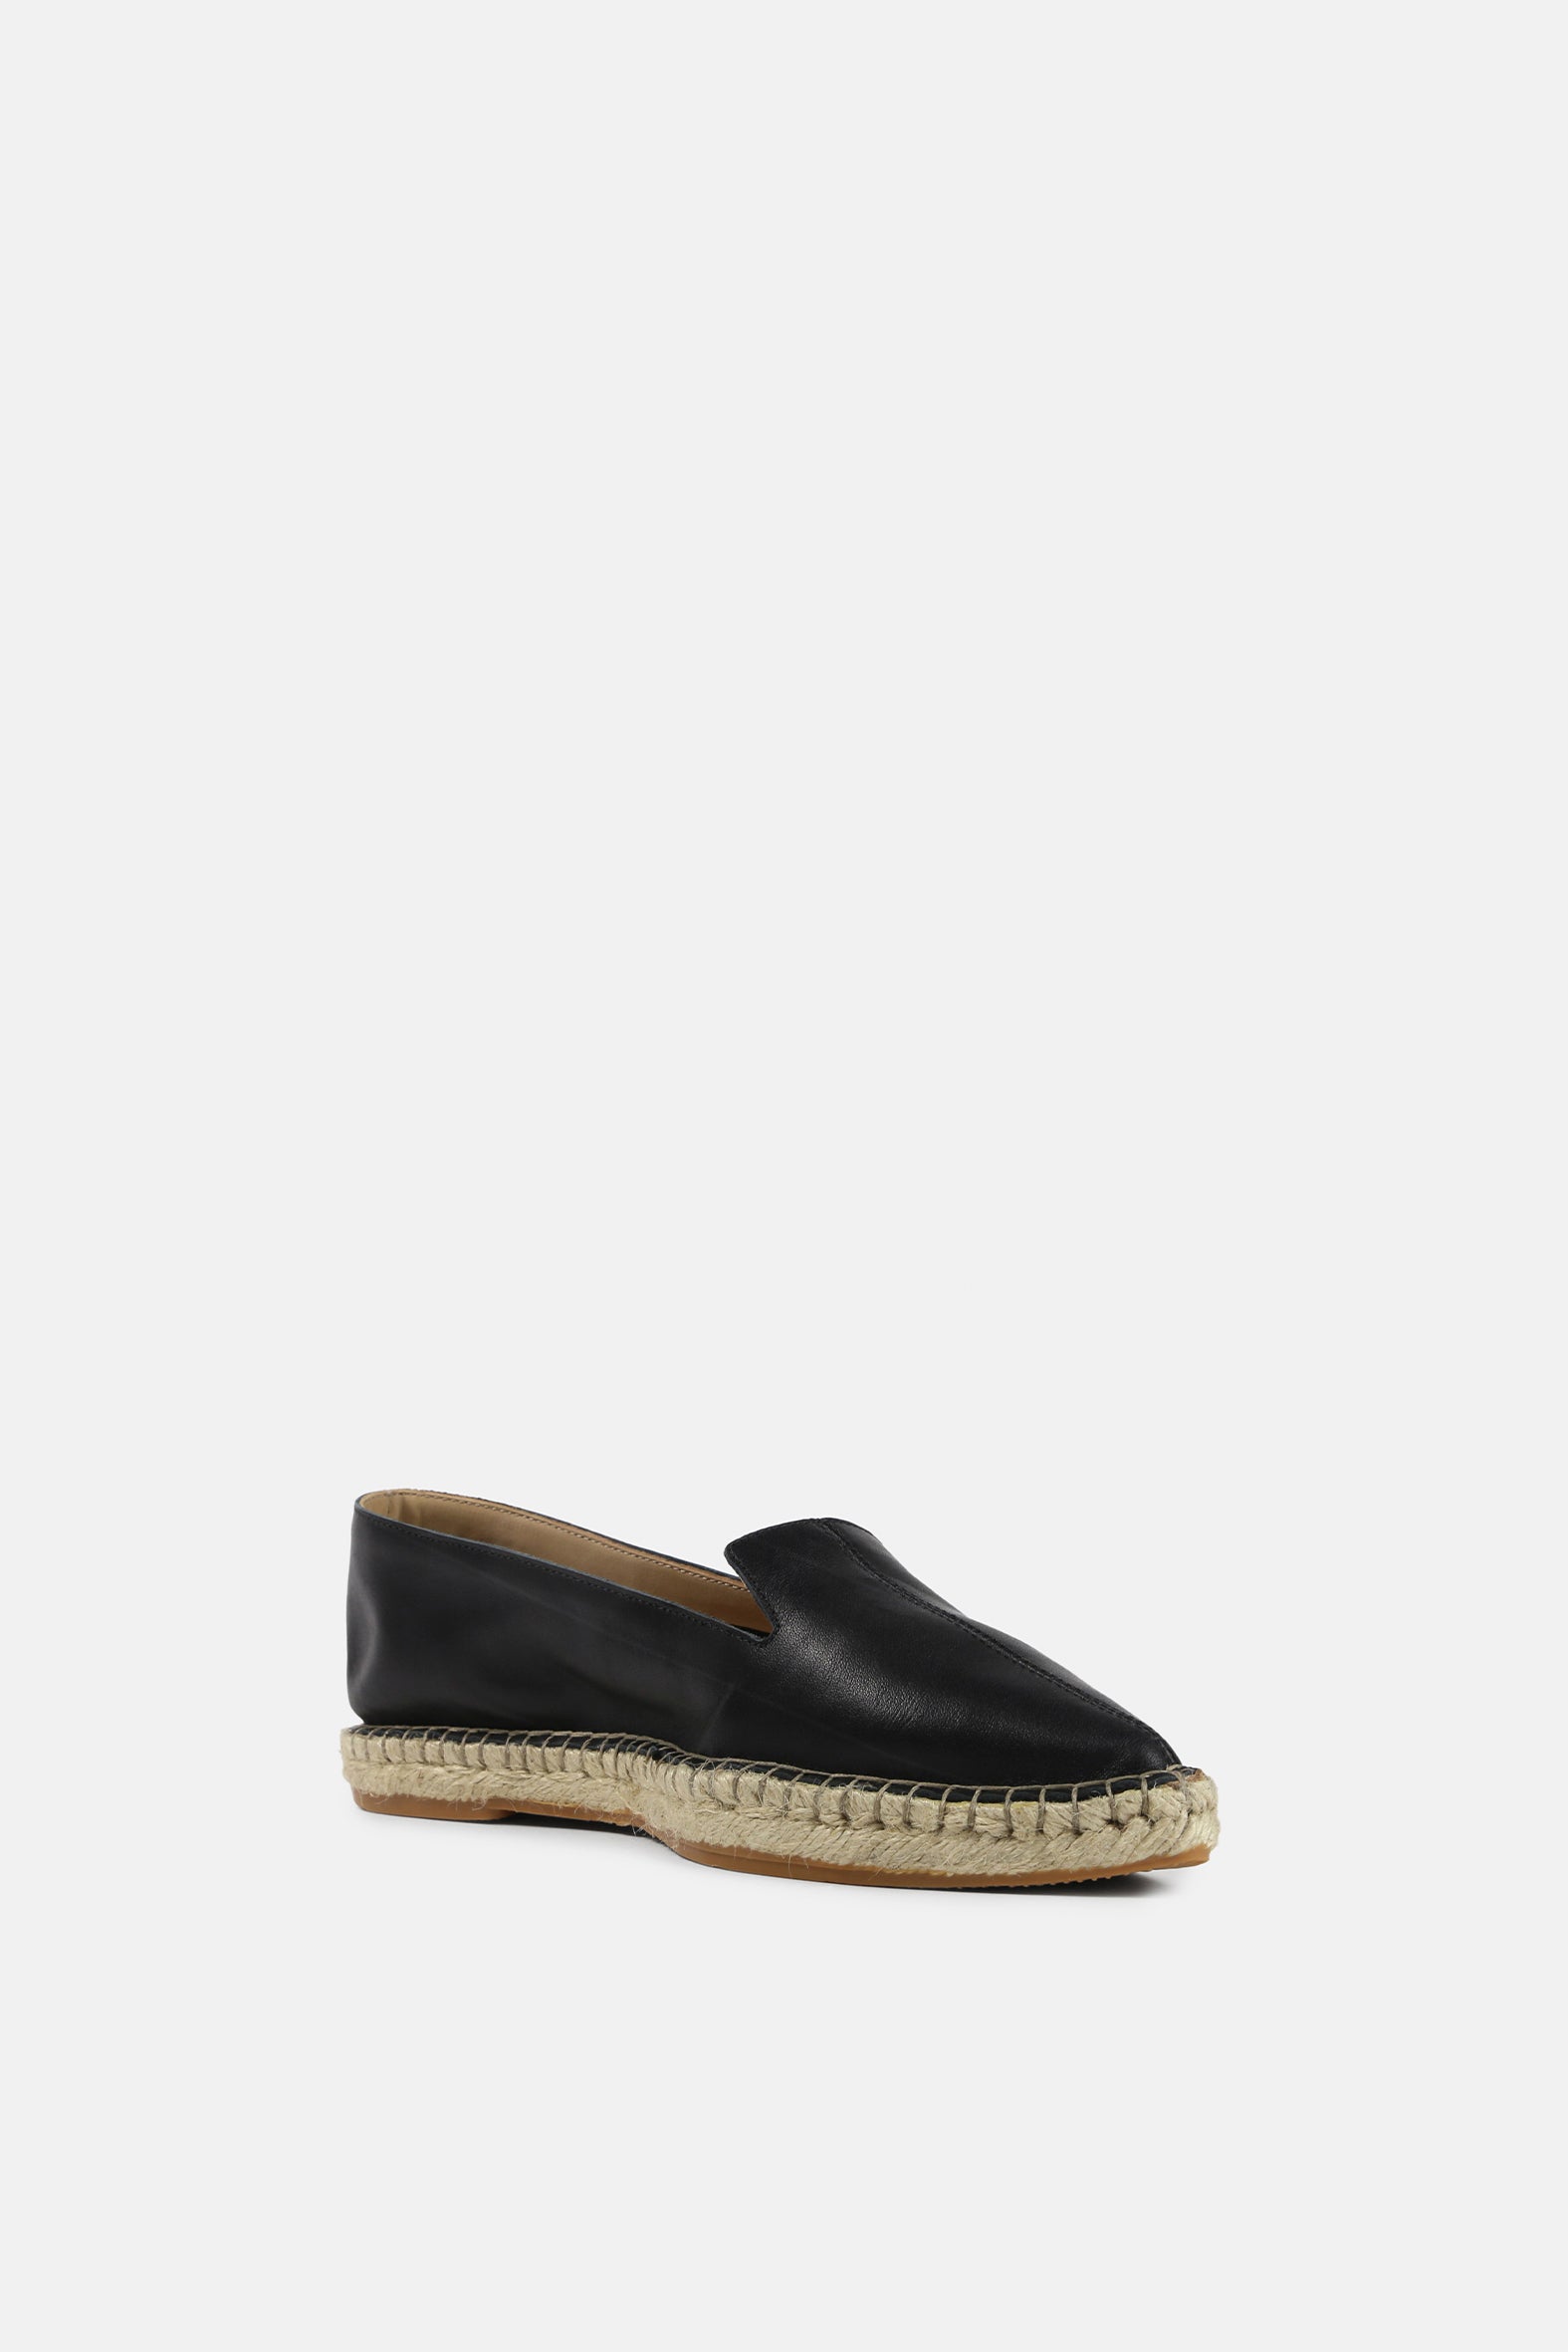 Pilgrim | Leather Loafer